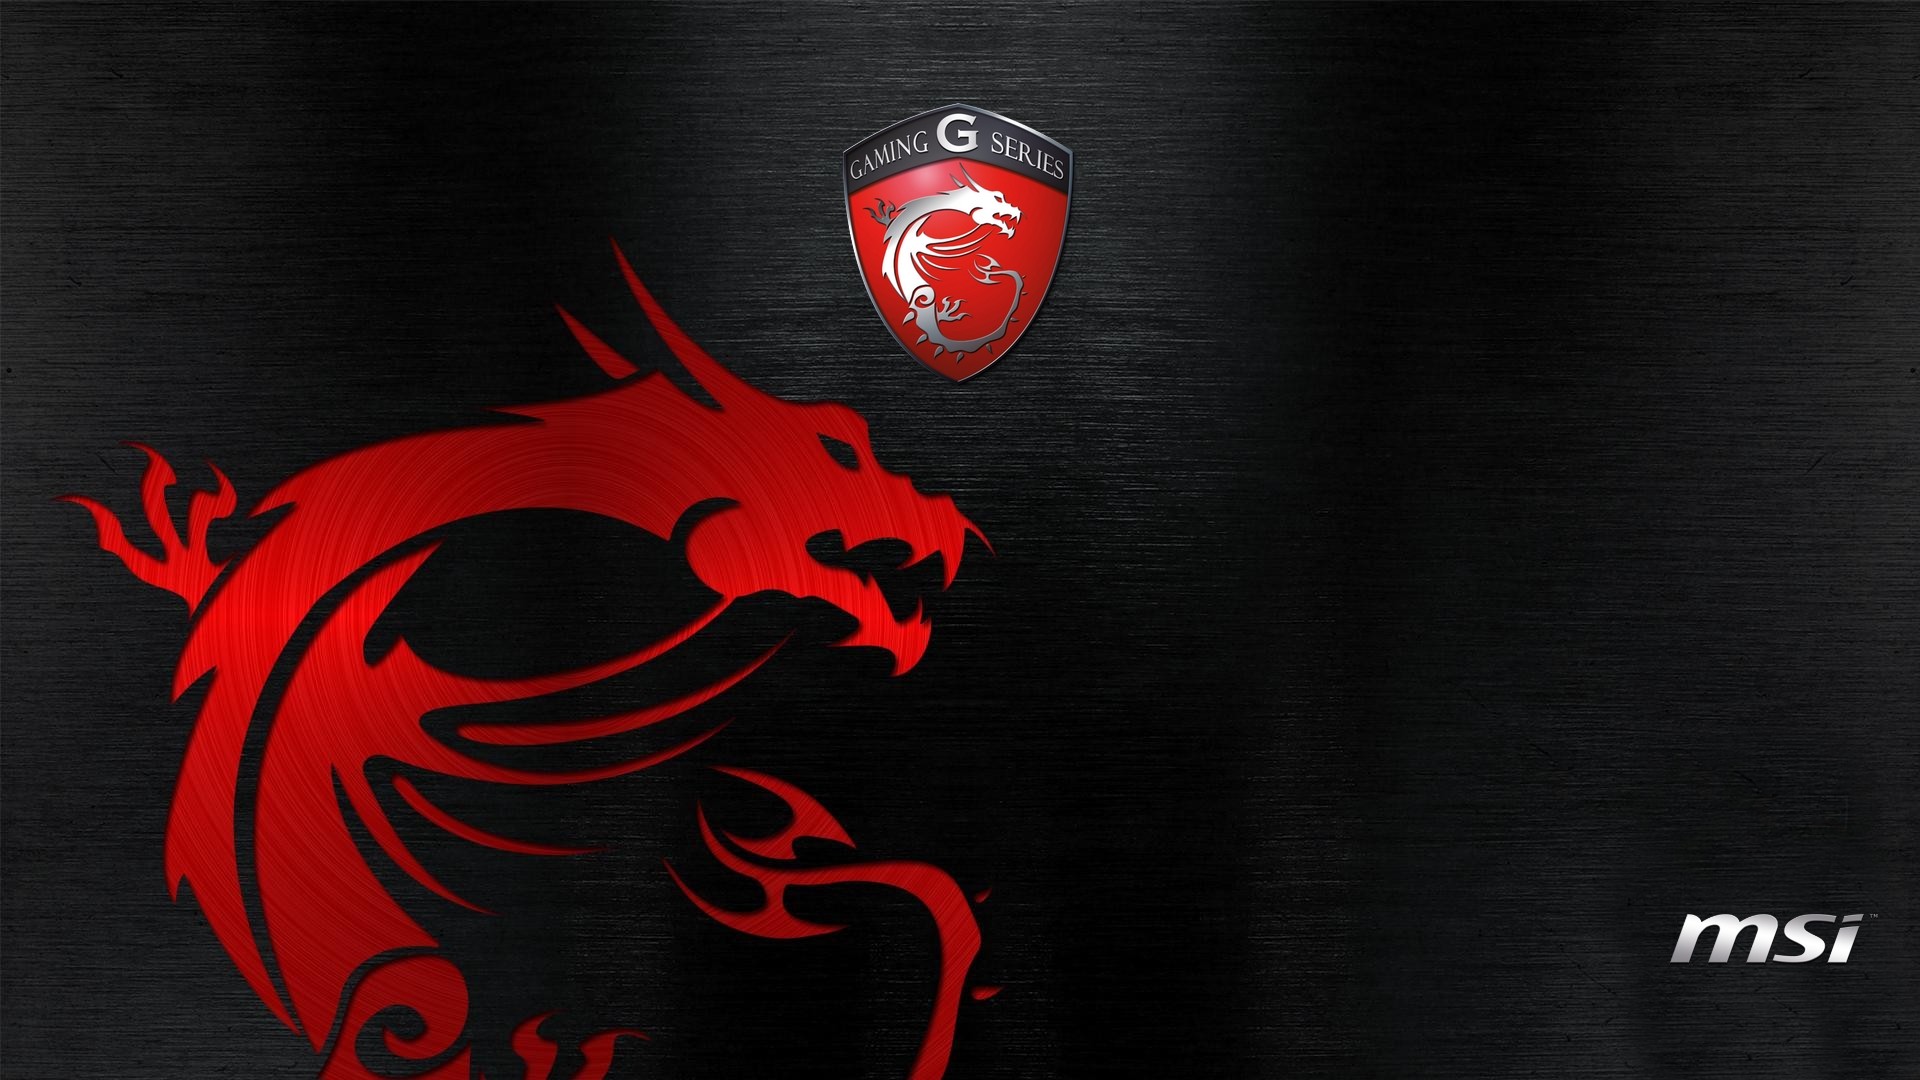 General 1920x1080 MSI gaming series dragon red hardware logo digital art watermarked